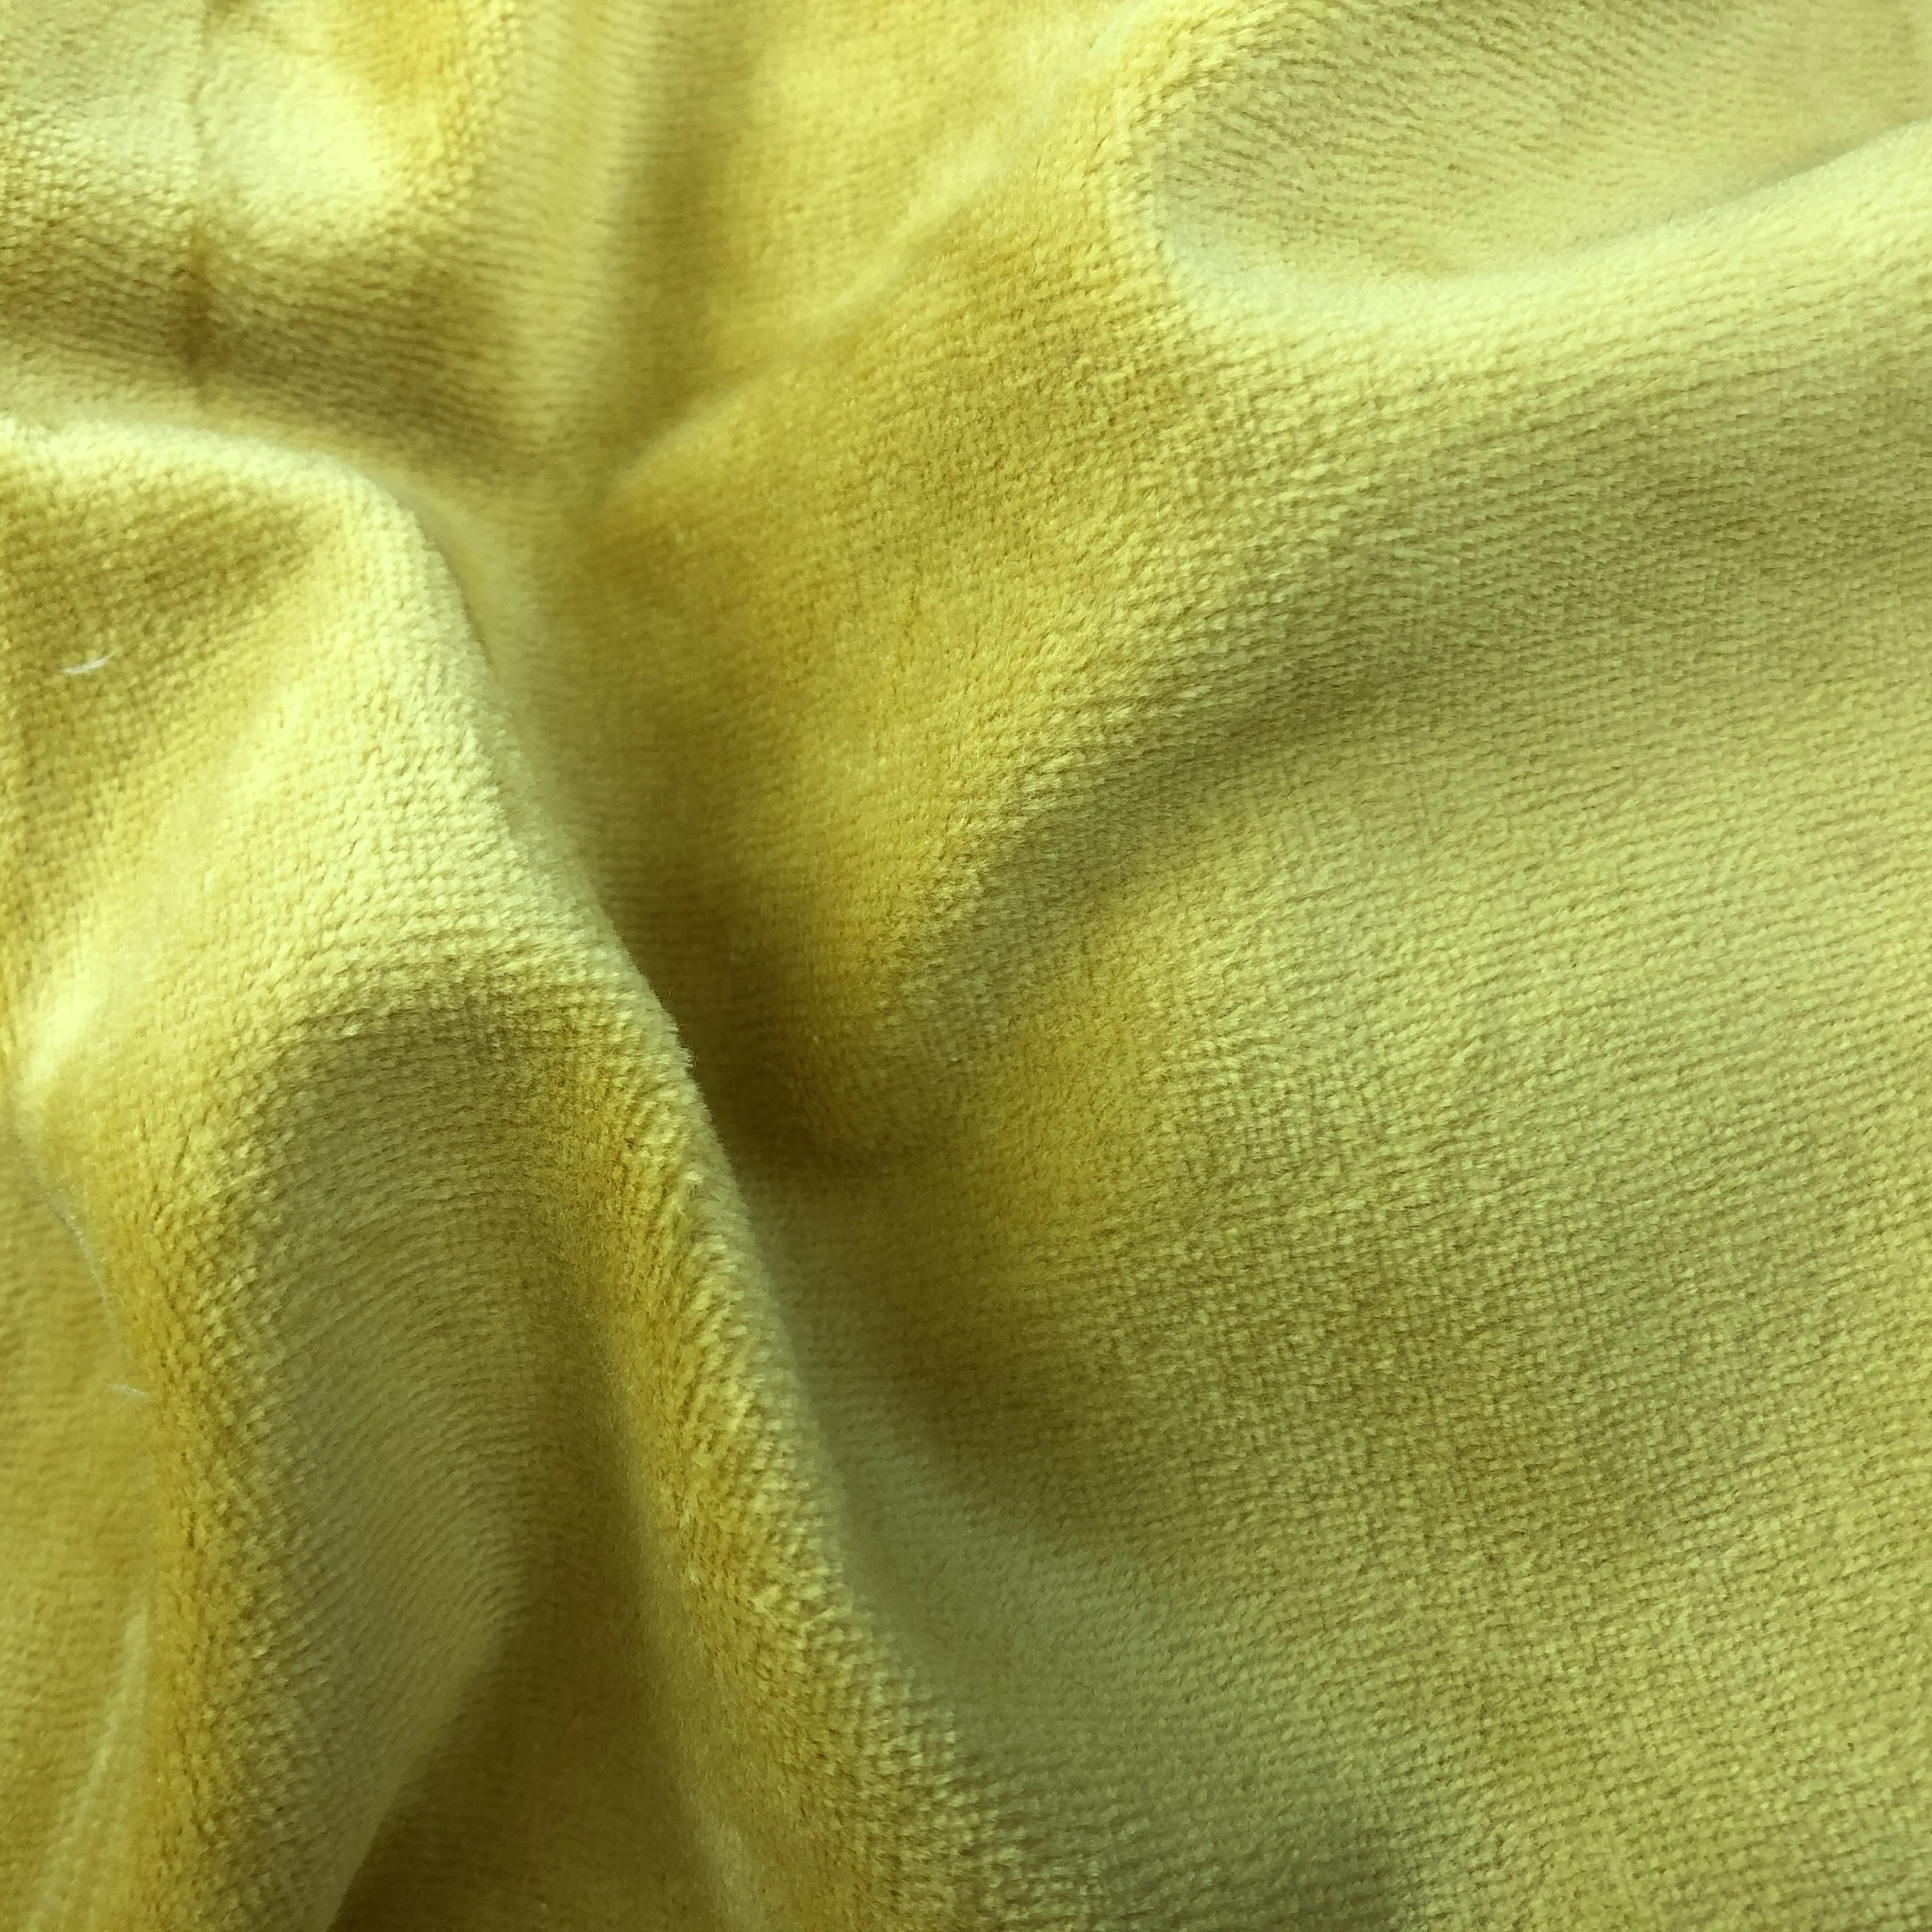 Хорошее качество и низкая цена, хлопчатобумажная бархатная ткань для теплой зимней одежды, индивидуальная однотонная окрашенная ткань (1600344281025)